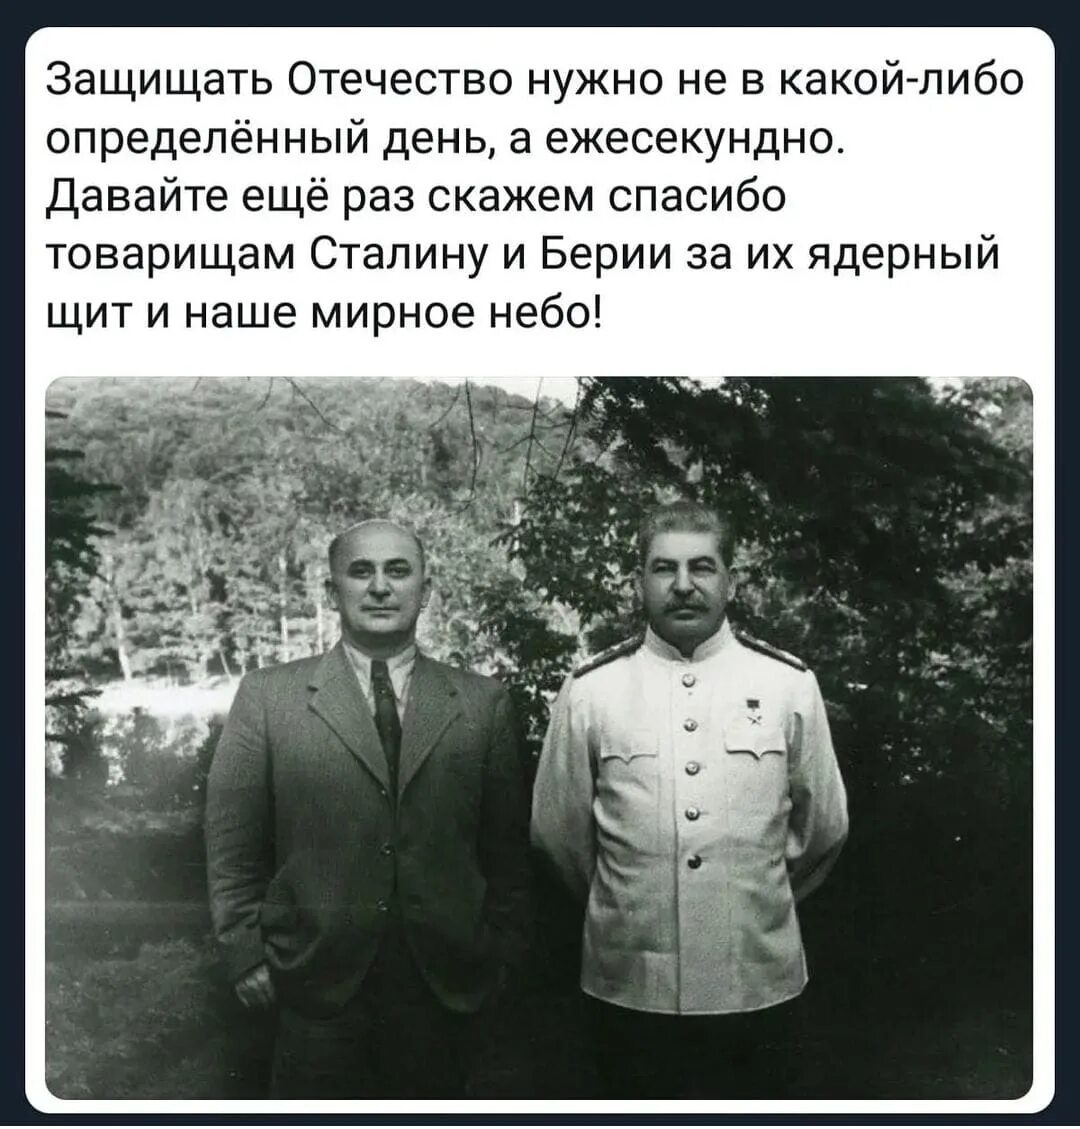 Сталин и Берия. Сталин русский грузинского происхождения. Сталин я русский человек грузинской национальности. Сталинский ядерный щит.